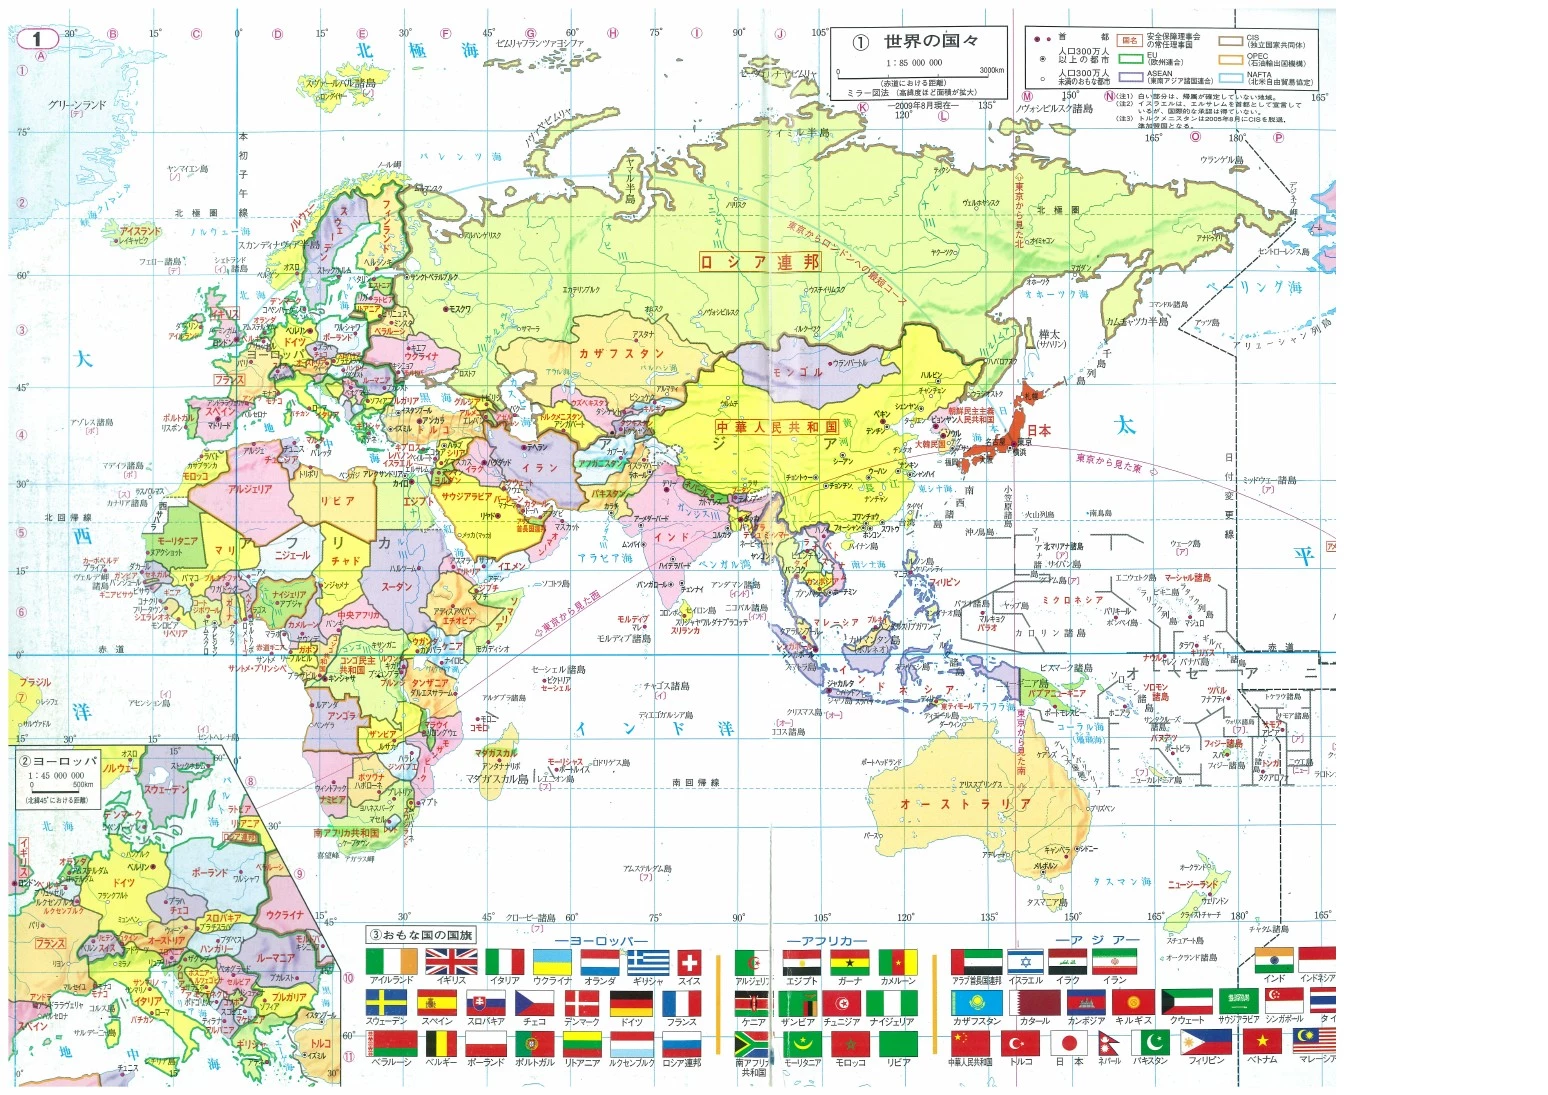 世界地图(行政区划)日文版【东半球】